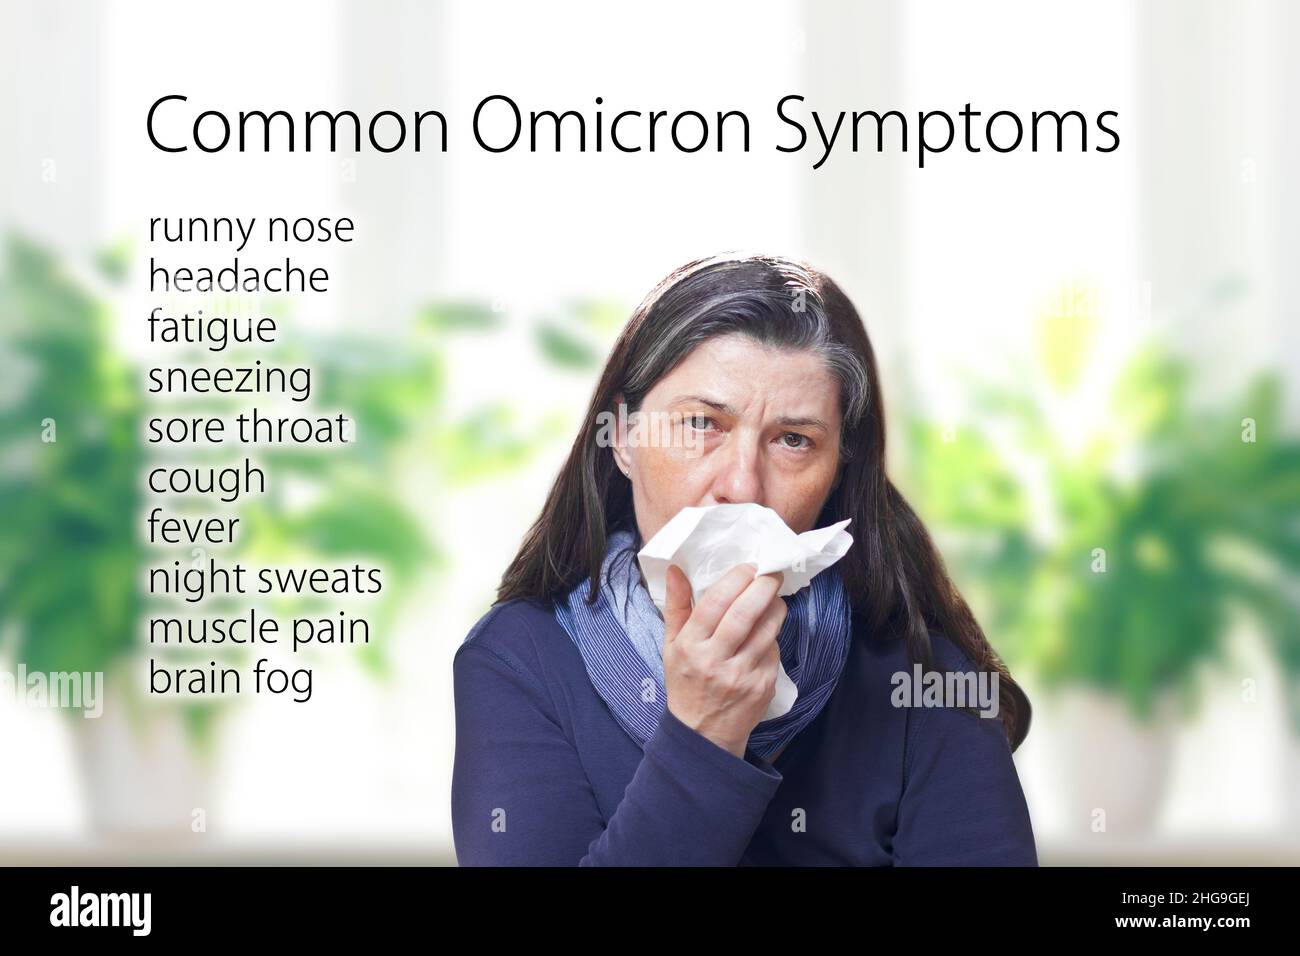 Síntomas comunes de la variante covid omicron, como secreción nasal, dolor de cabeza, fatiga y dolor de garganta, texto junto a una mujer de mediana edad estornudando. Foto de stock